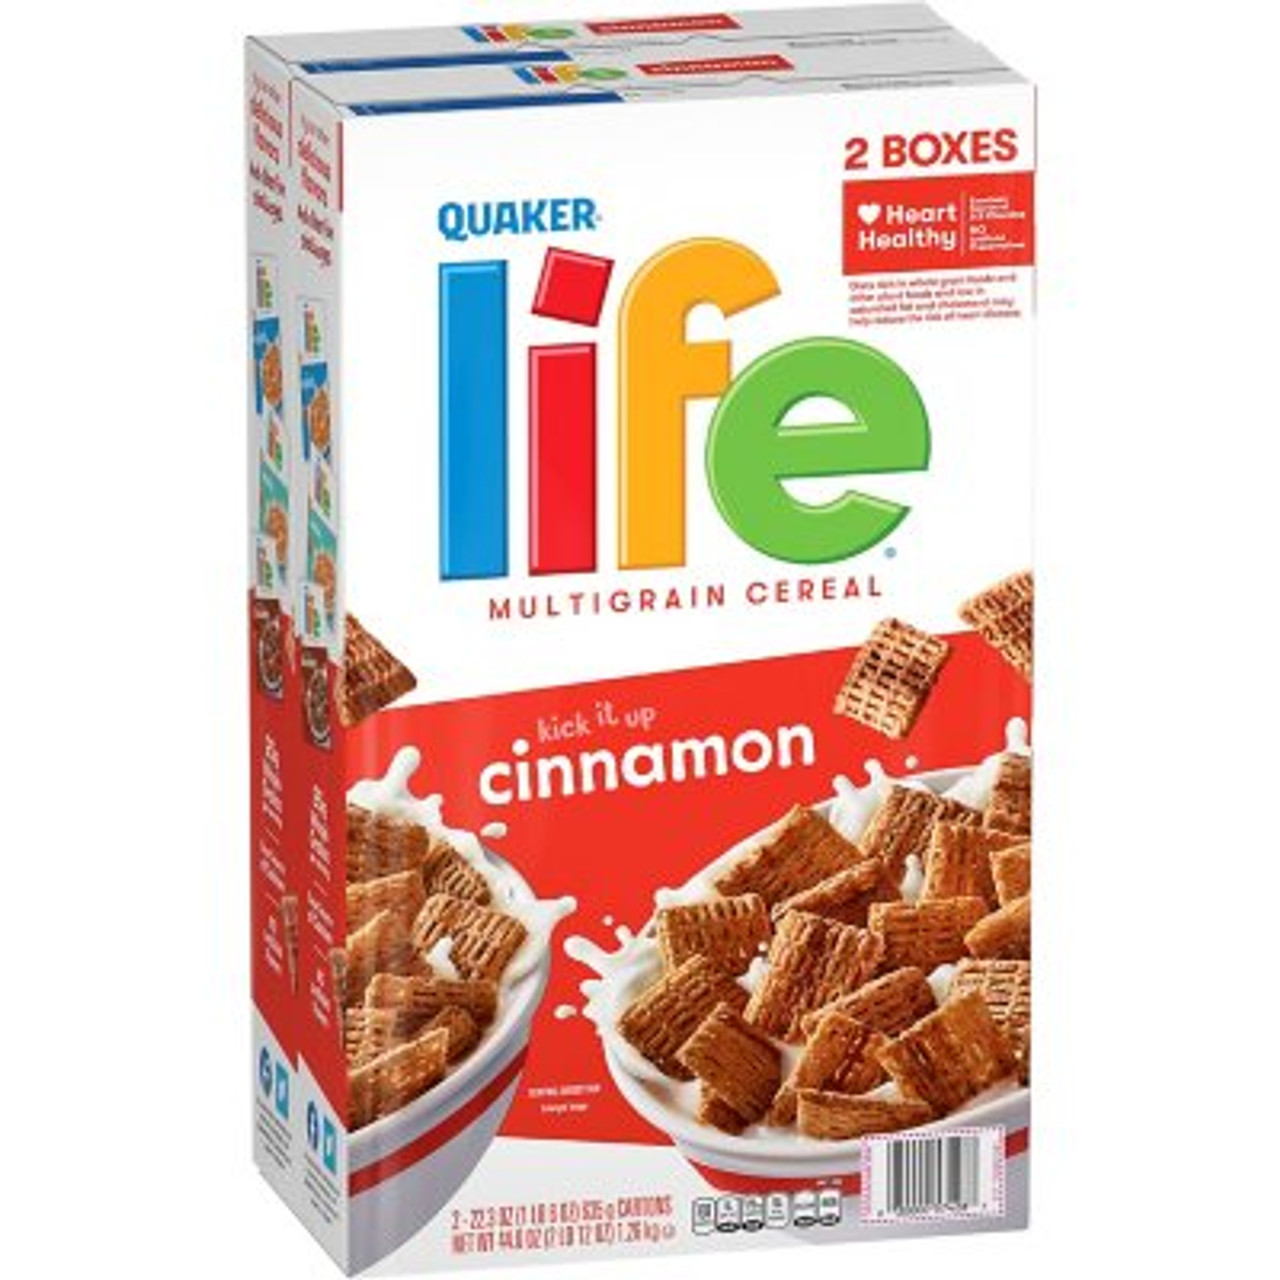 Quaker Life Multi-Grain Cereal, Cinnamon (2 pk.) - *Pre-Order